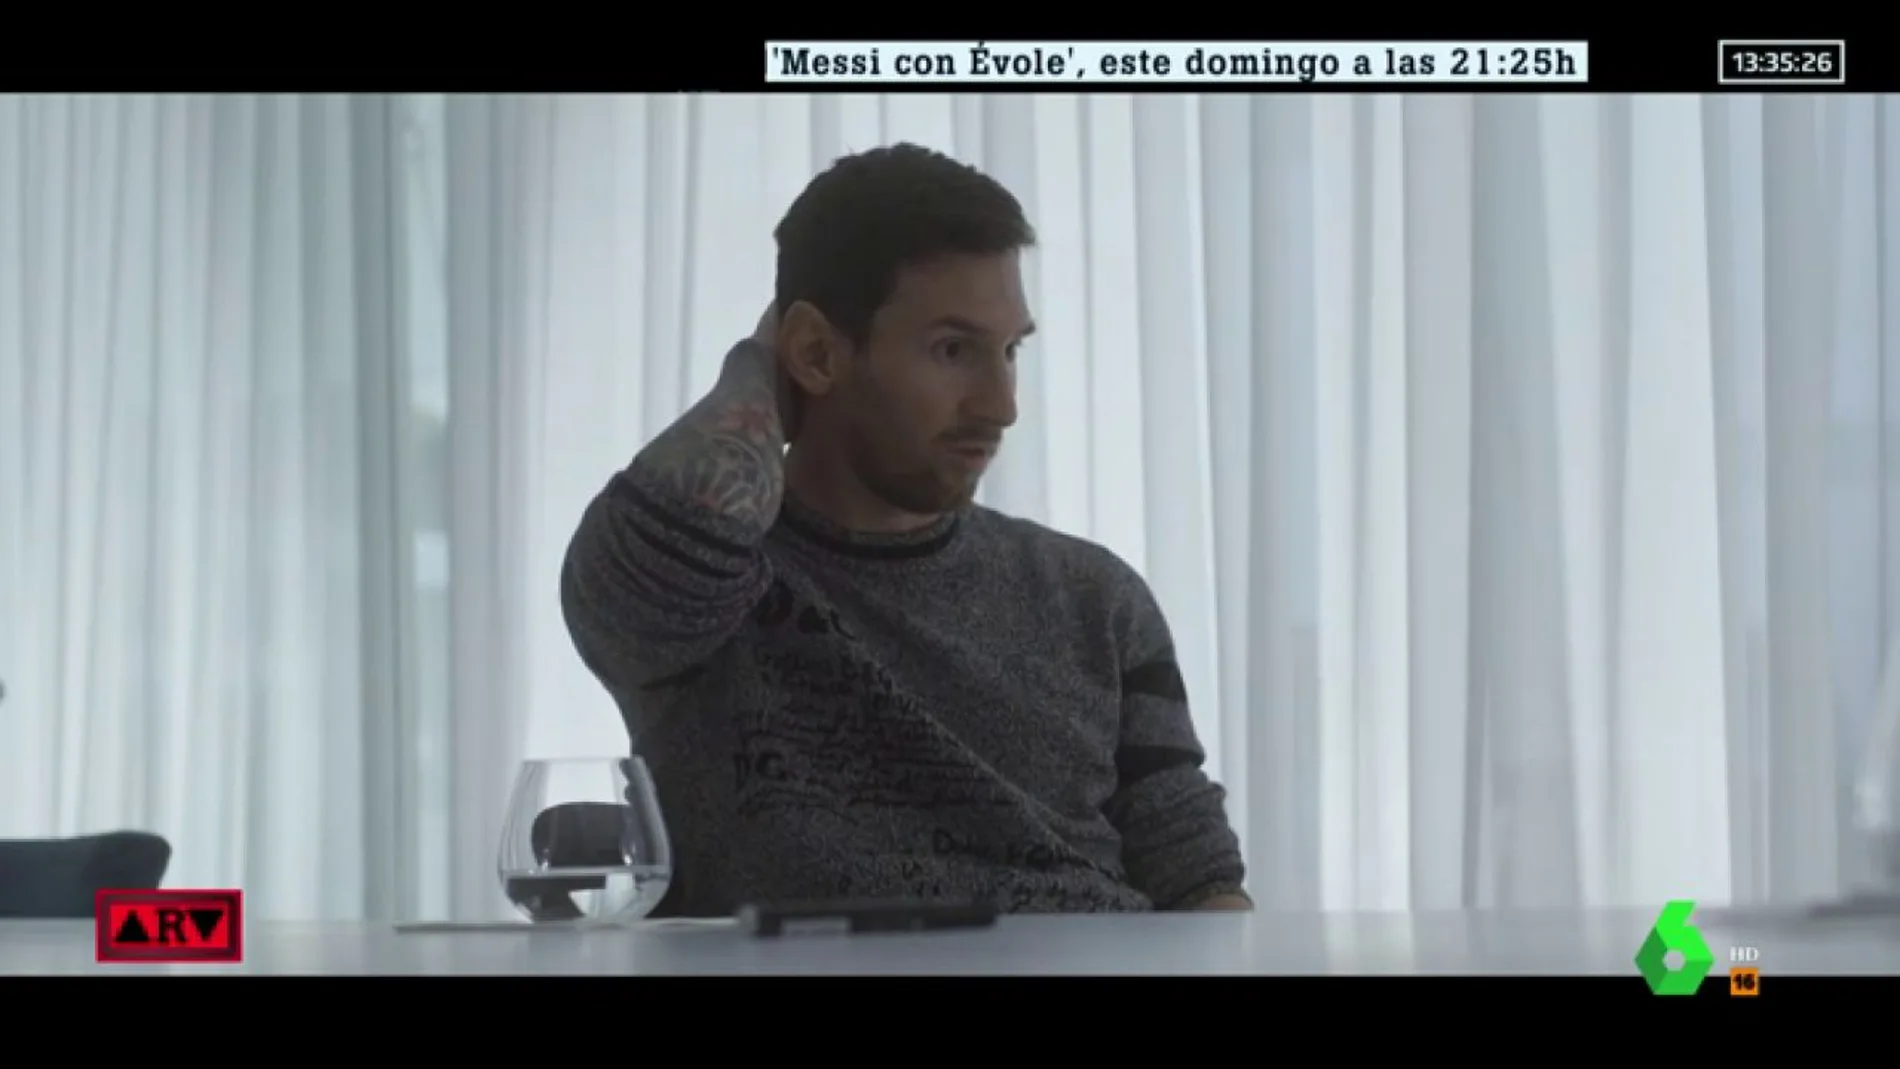 Leo Messi, durante la entrevista con Évole